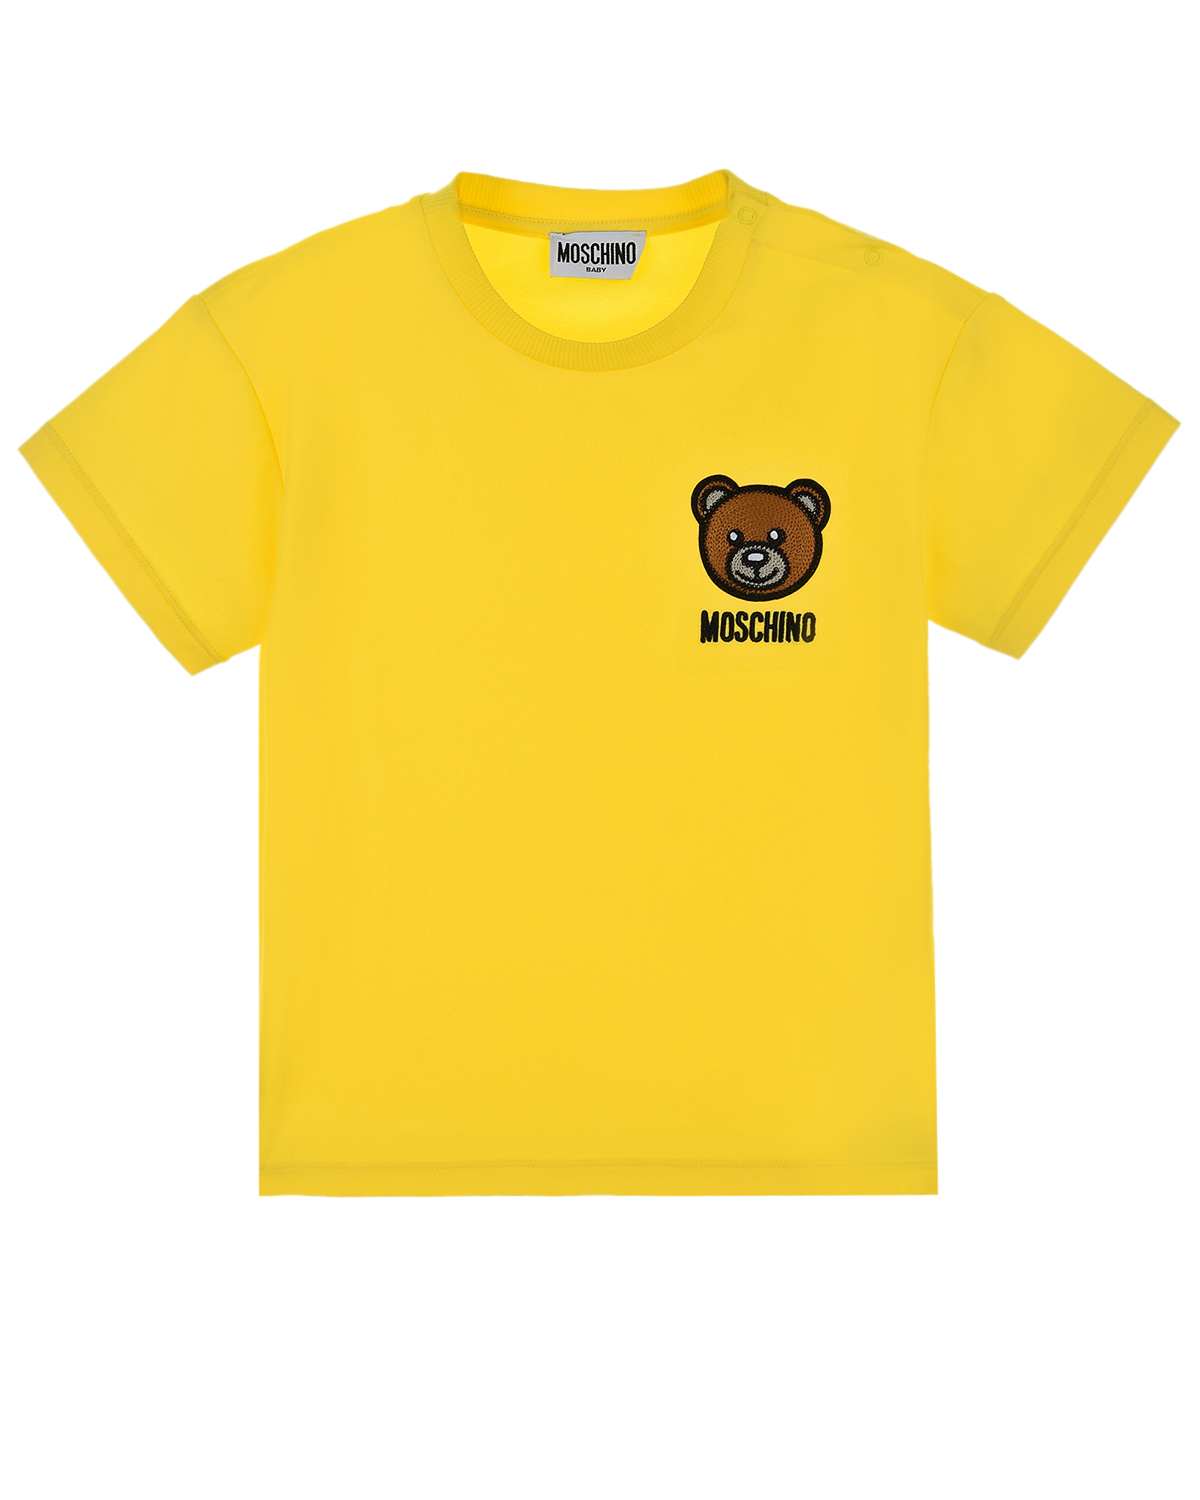 Купить Желтая футболка с аппликацией Moschino детская, Желтый, 95%хлопок+5%эластан, 96%хлопок+4%эластан, 60%акрилик+20%шерсть+20%полиэстер, 100%полиэстер